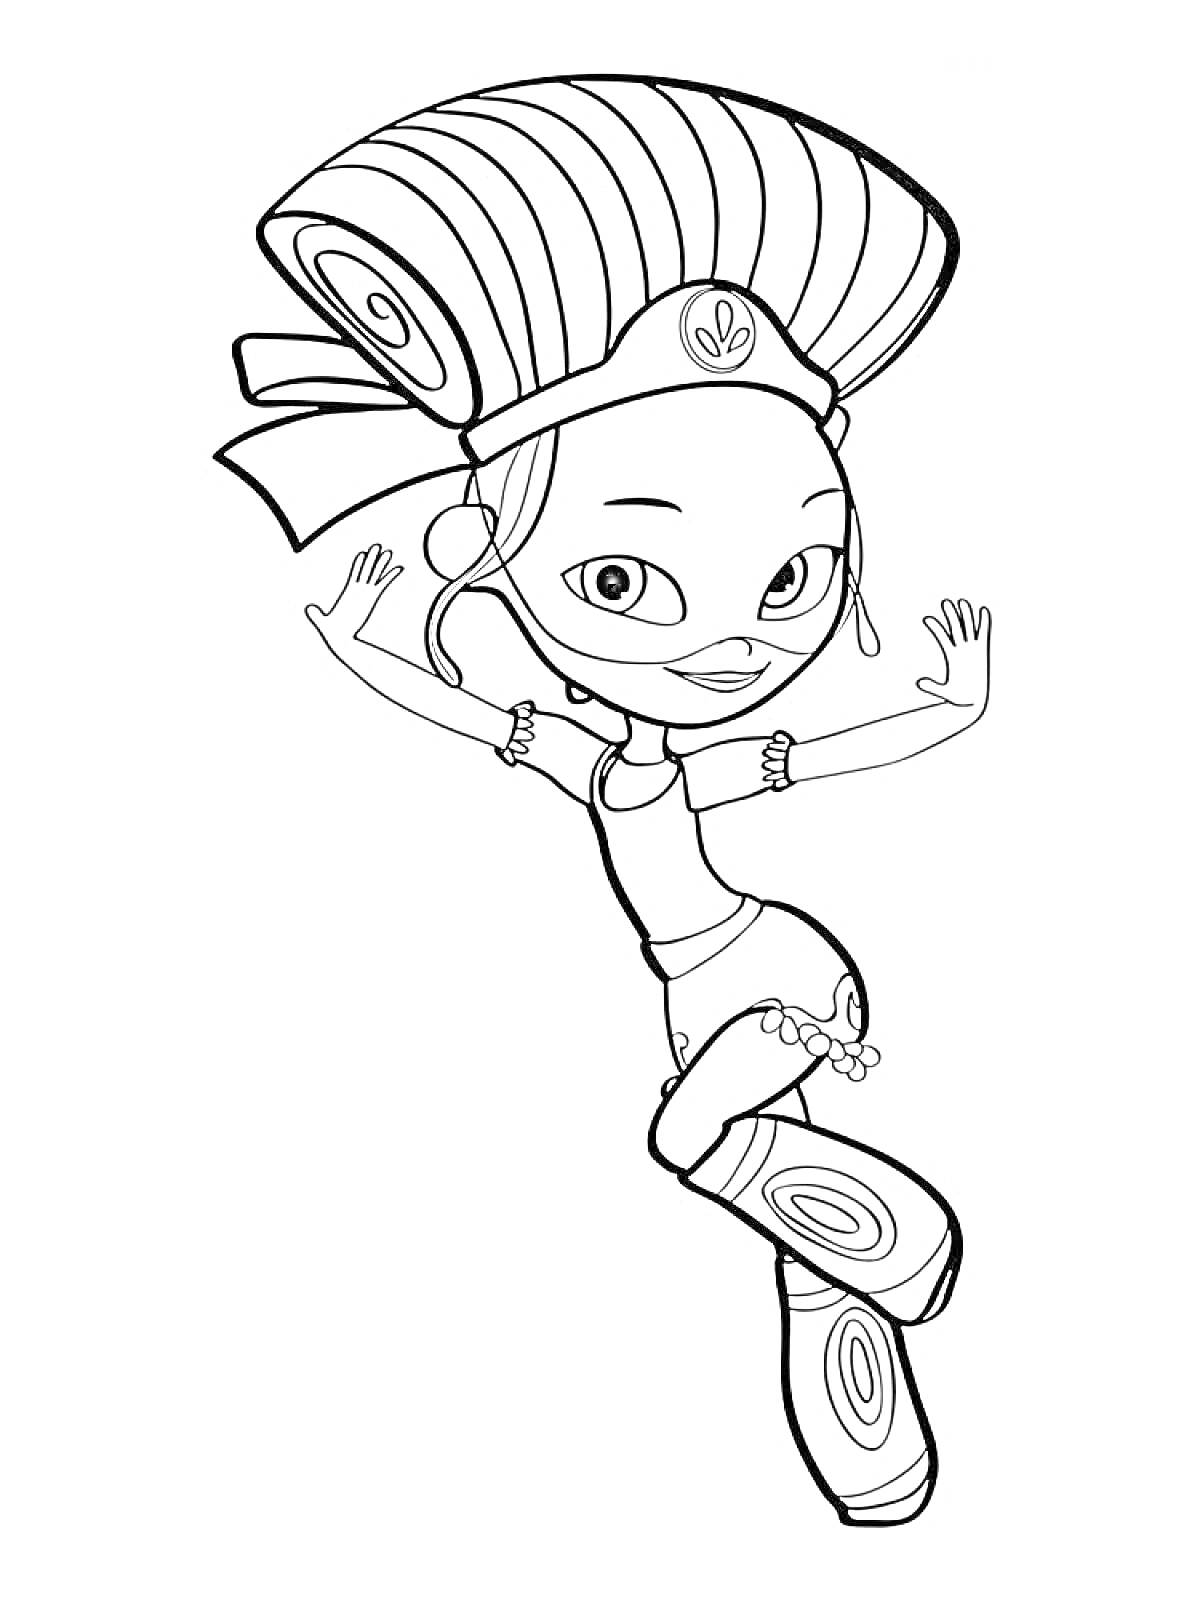 Раскраска Девочка с большой прической, браслетами и сапогами с узорами